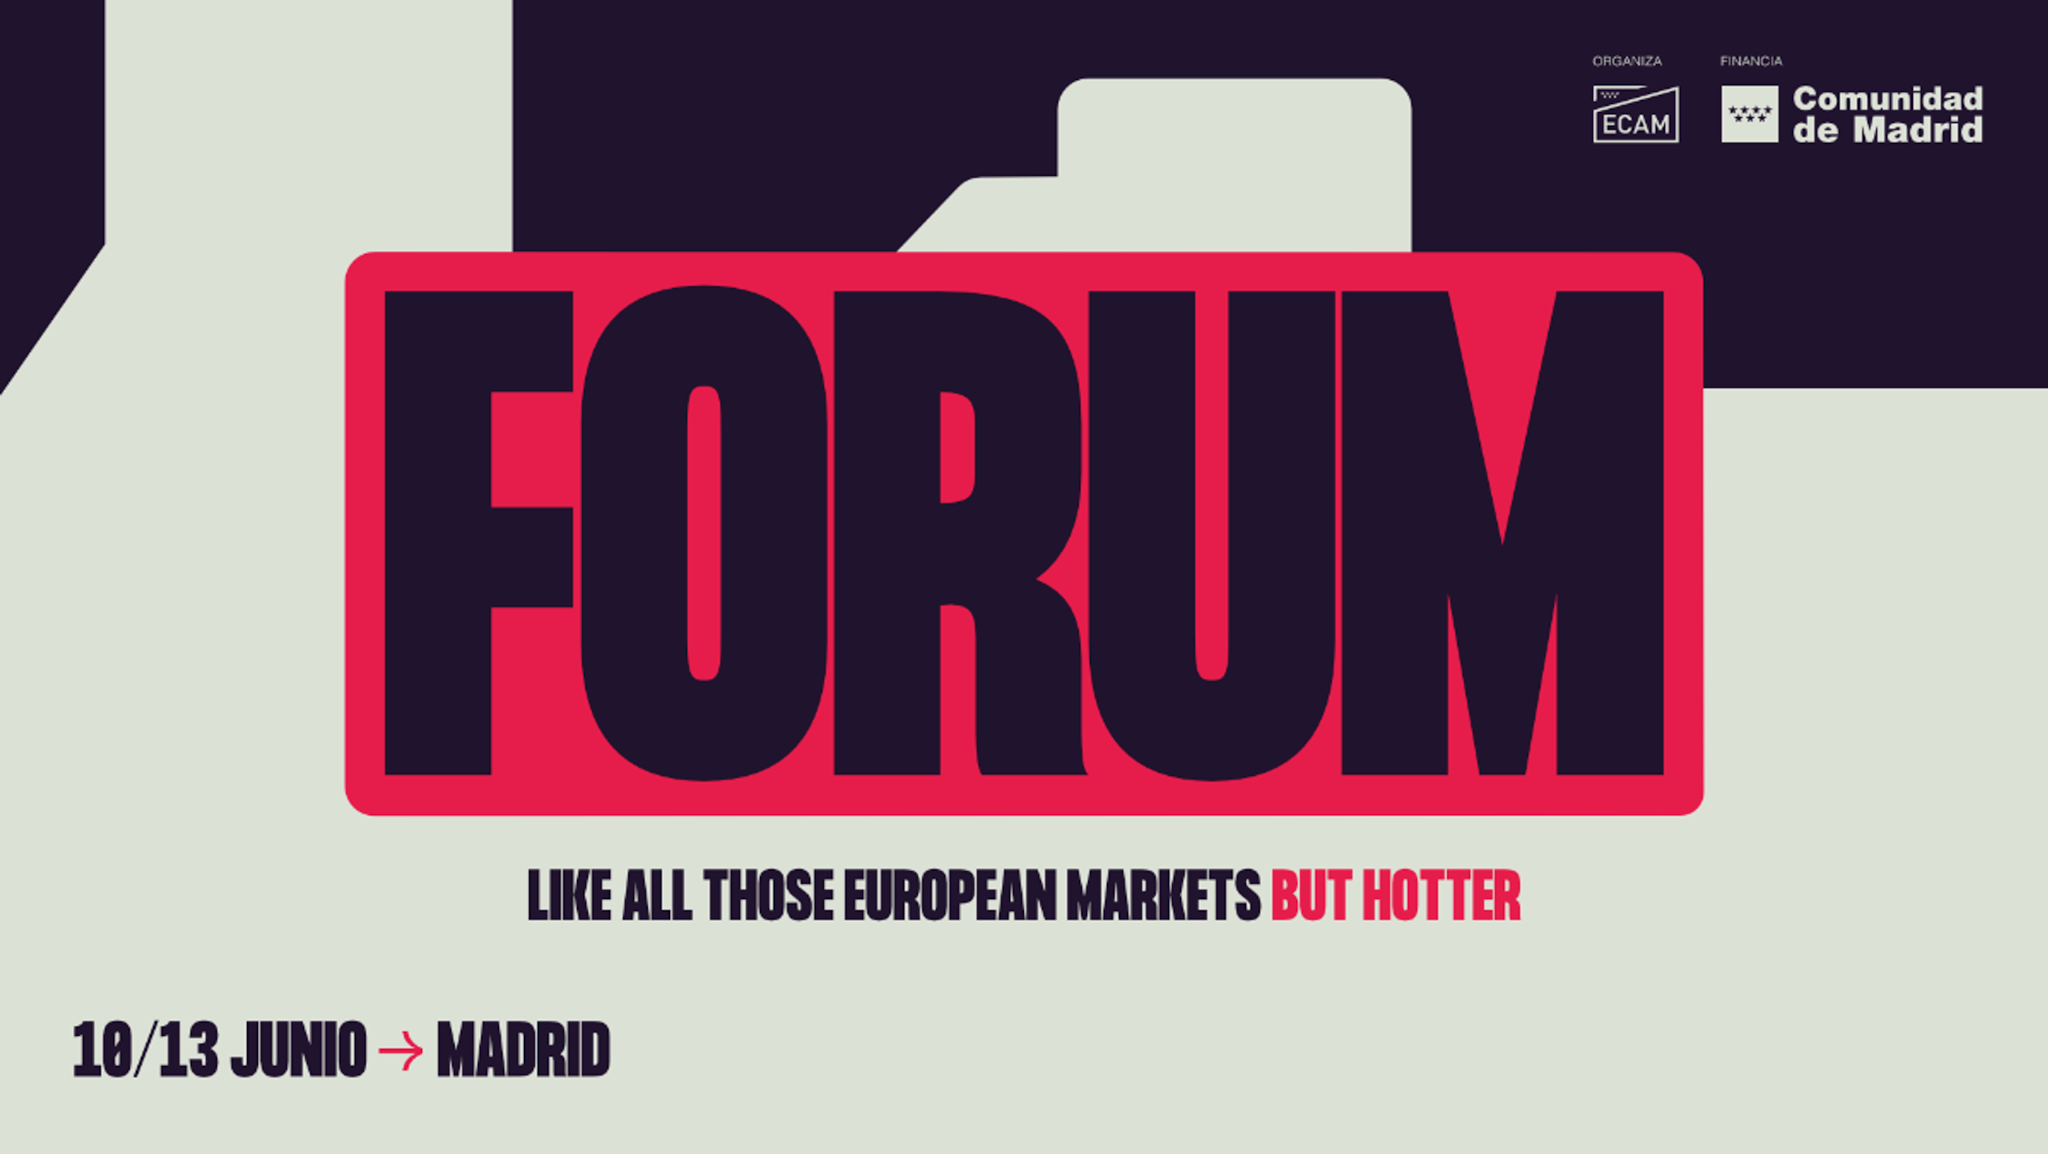 Cartel promocional de la primera edición de ECAM FORUM